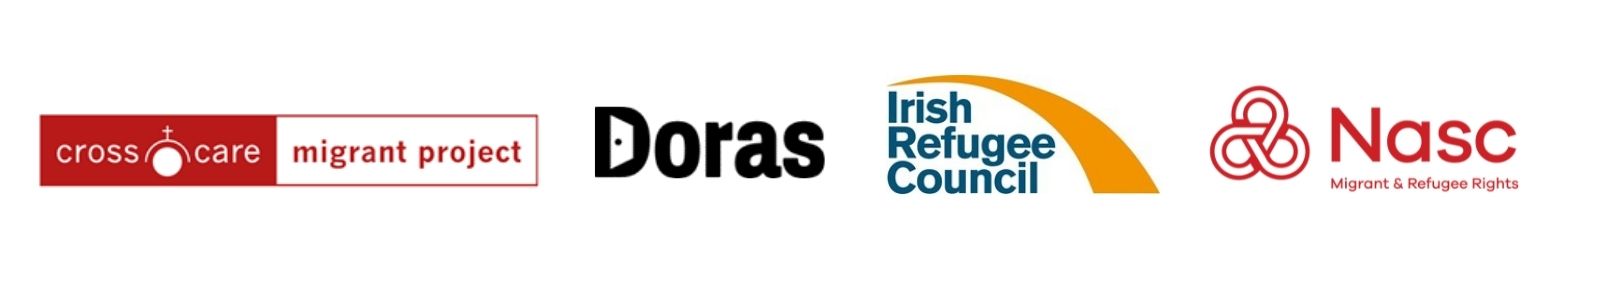 Logos: Crosscare, Doras, Irish Refugee Council and Nasc